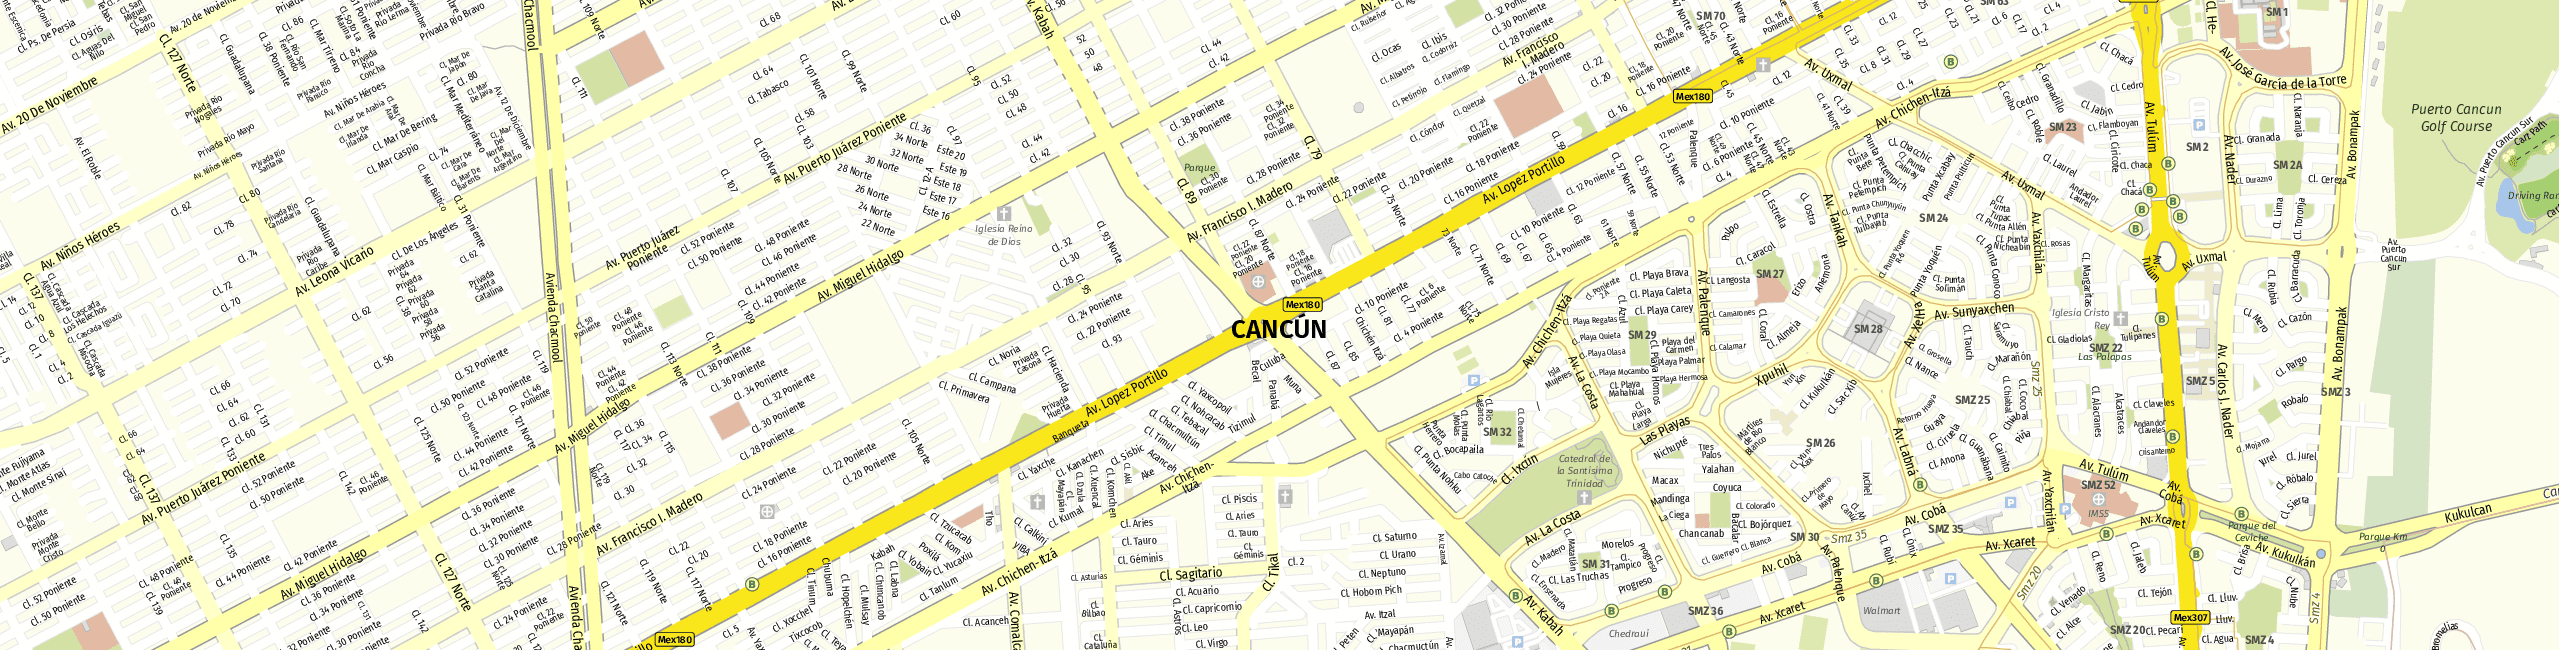 Stadtplan Cancún zum Downloaden.